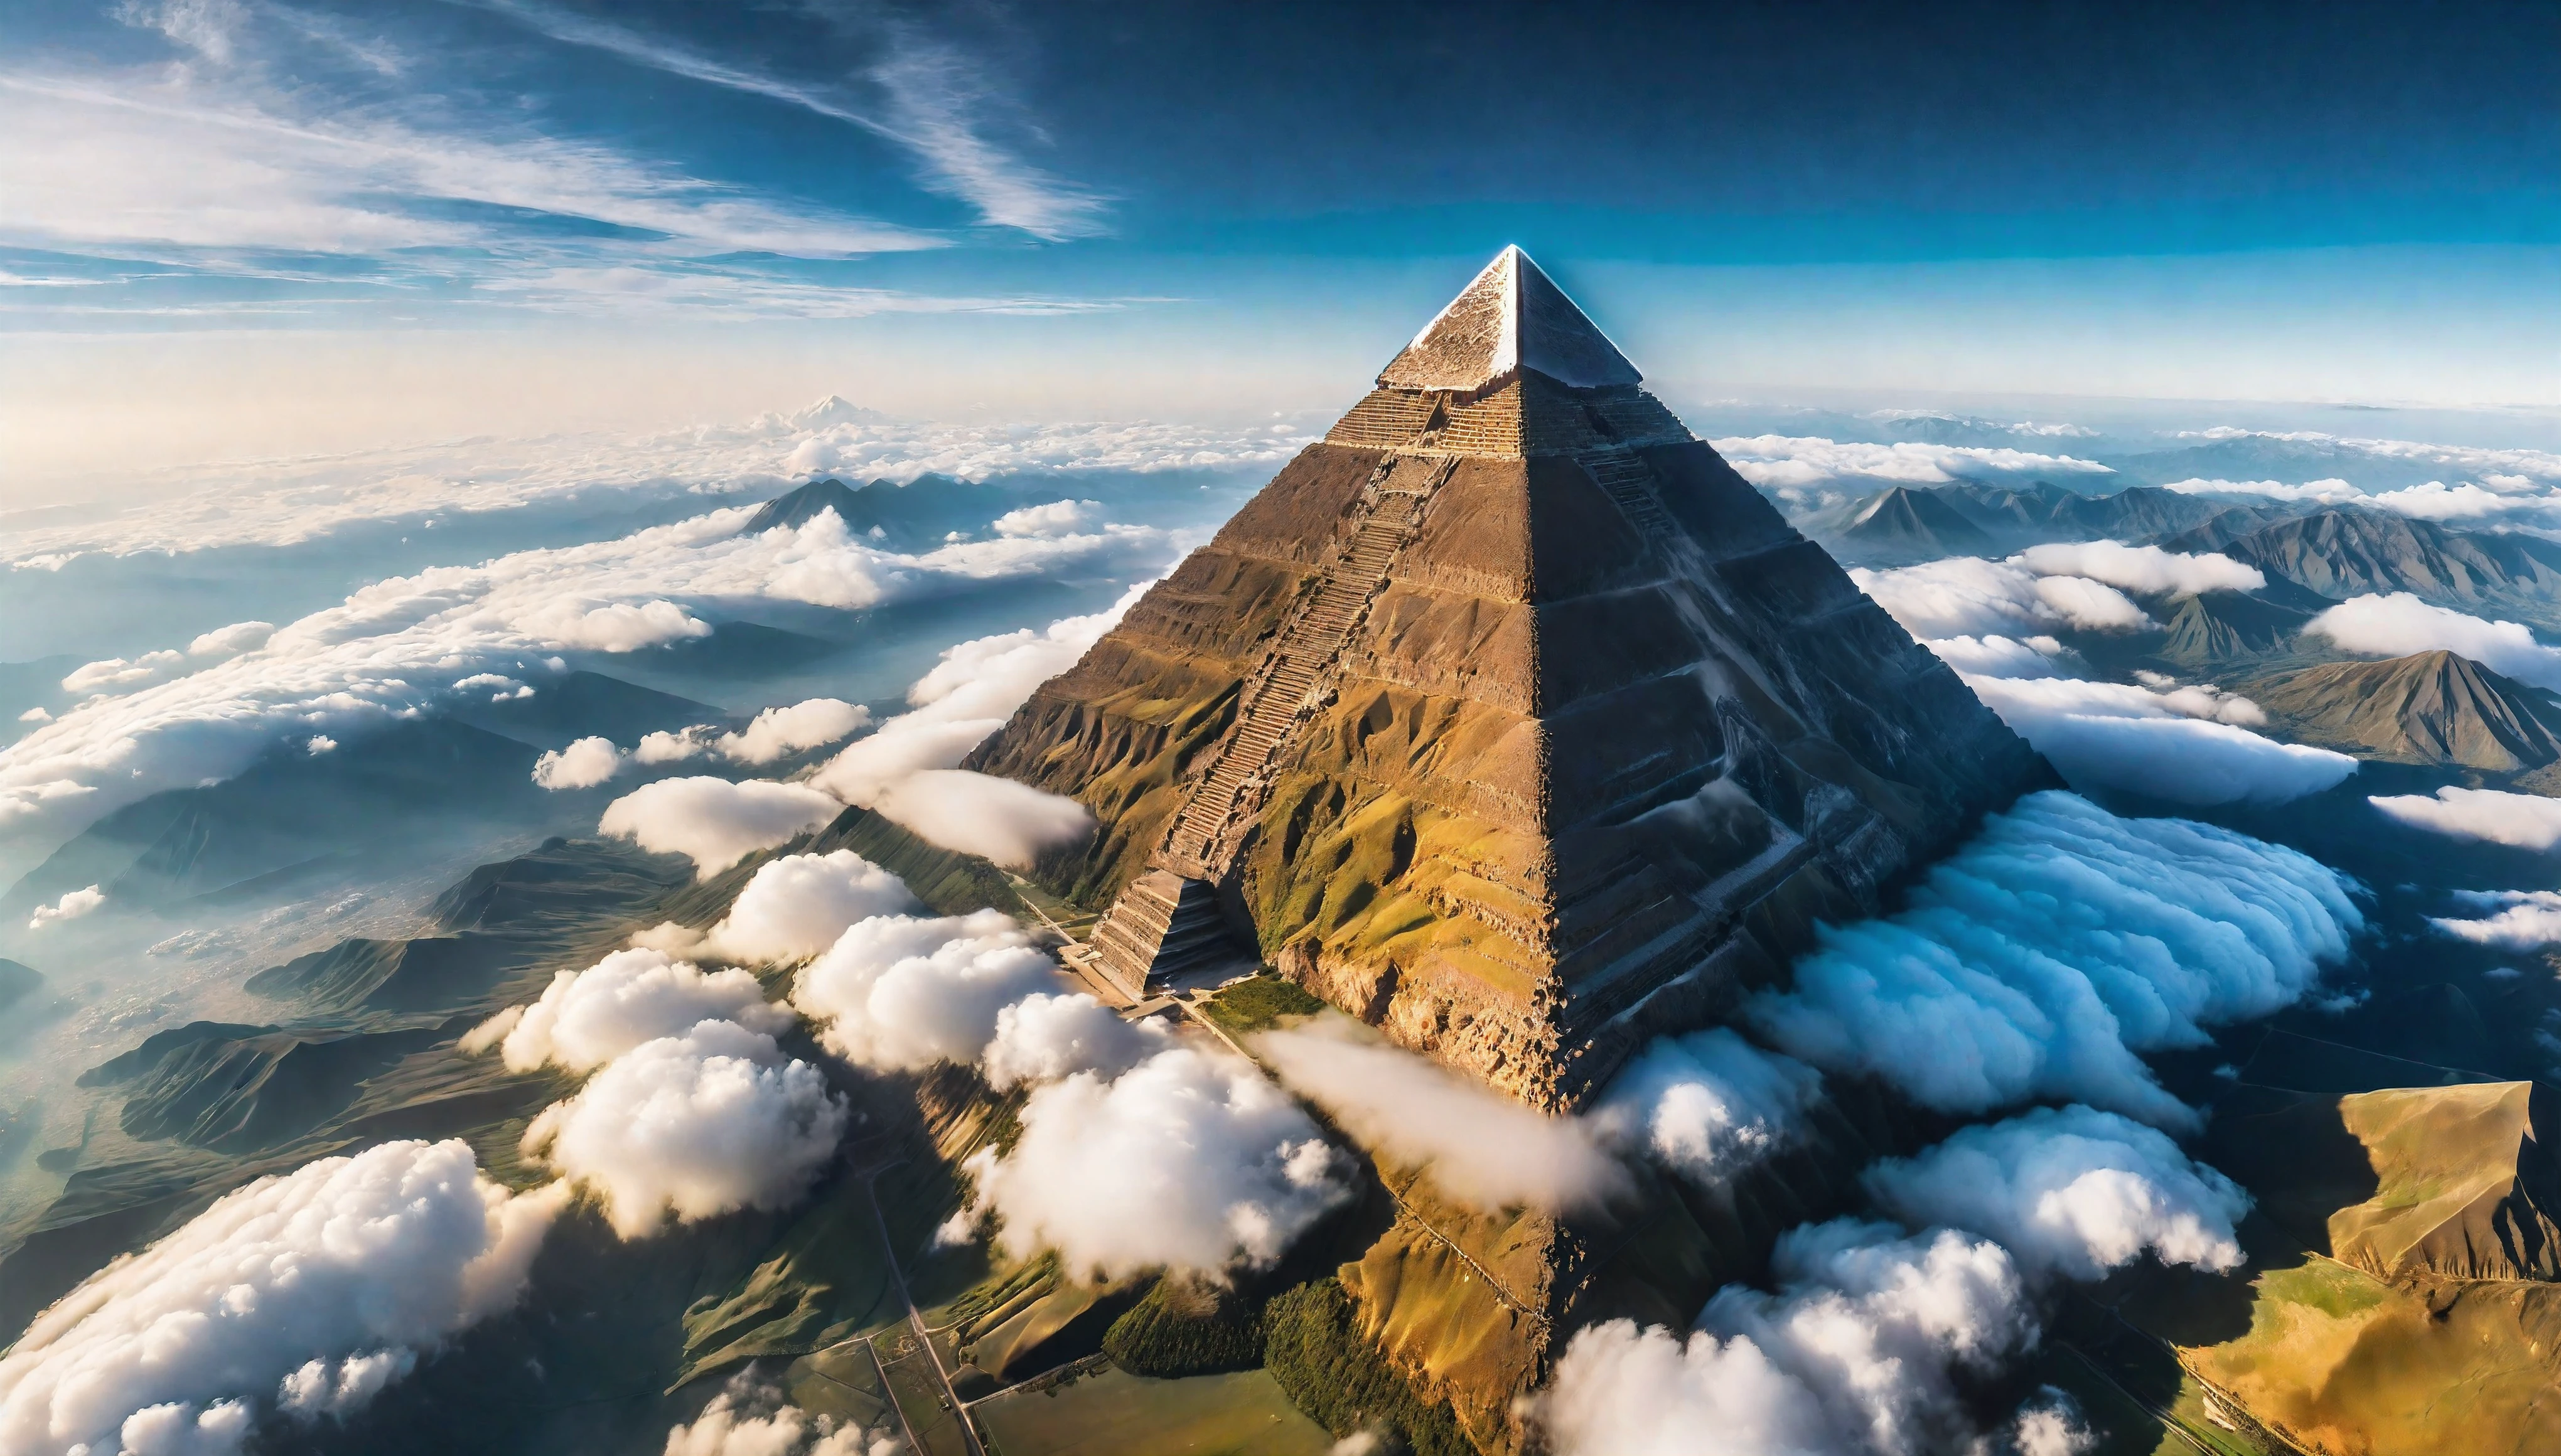 с высоты птичьего полета of Giant Pyramid Mountain towering above the cloud, естественное освещение, симметричная пирамида, (ультра wide angle:1.5), Фото объектива «рыбий глаз», ((с высоты птичьего полета):1.2), ((ощущение огромной высоты):1.1), highly Детальed cloud and sky at background, (tyndВСЕ effect), Сосуществование с окружающей средой, extremely Детальed cloud and sky background, Дикий пейзаж, Красивый пейзаж, extremely Детальed, глубина резкости, Лучшее качество, шедевр, высокое разрешение, Гиперреалистичный, 8К, вид сверху, вид под высоким углом, Палитра синих цветов. Rendered in ультра-high definition with UHD and retina quality, this шедевр ensures super Деталь. С акцентом на высокое качество и точность, это отмеченное наградами изображение передает все нюансы в потрясающем разрешении 16k., погружая зрителей в реалистичное изображение. Избегайте крайних углов или преувеличенных выражений, чтобы сохранить реализм.. ((идеальный_состав, идеальный_дизайн, идеальный_макет, идеальный_Деталь, ультра_Детальed)), ((усиливать_ВСЕ, исправить_все)), Более детально, усиливать.